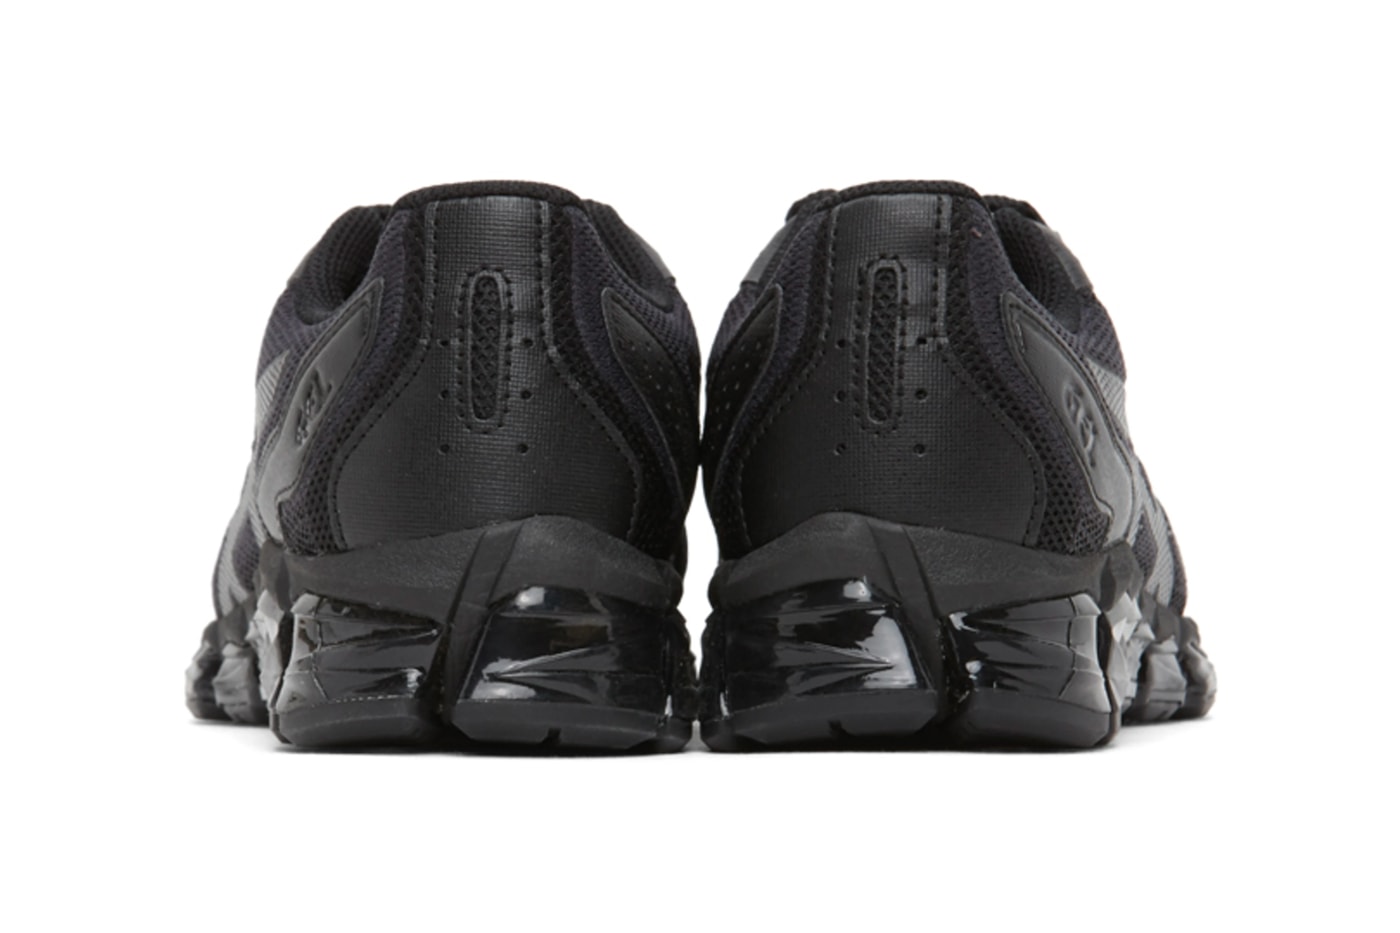 Asics Black GEL-Quantum 360 6 Sneakers Release  shoes footwear black monochrome kicks sneakers trainers running japan Japanese footwear Gel  